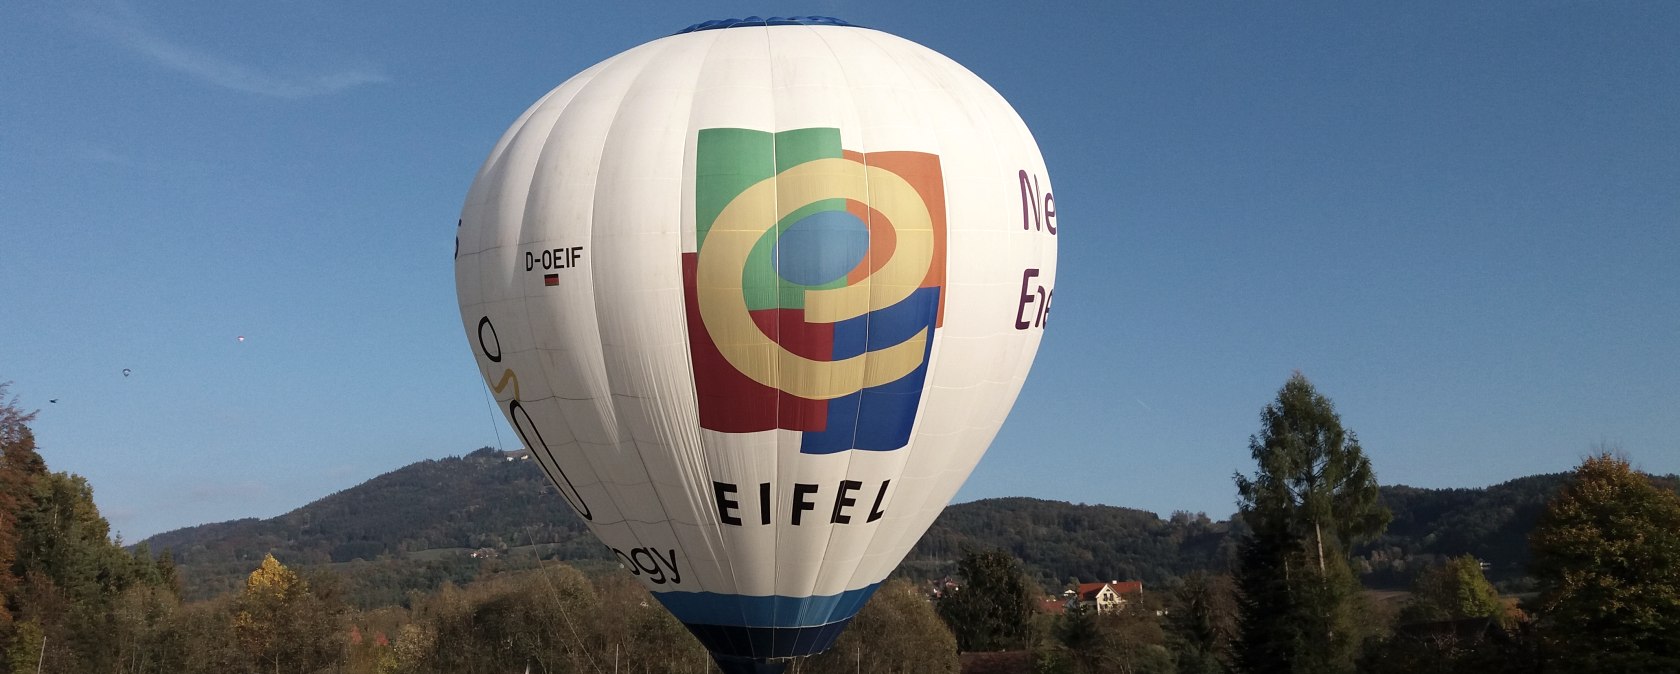 Regionalmarke-Ballon, © Regionalmarke Eifel